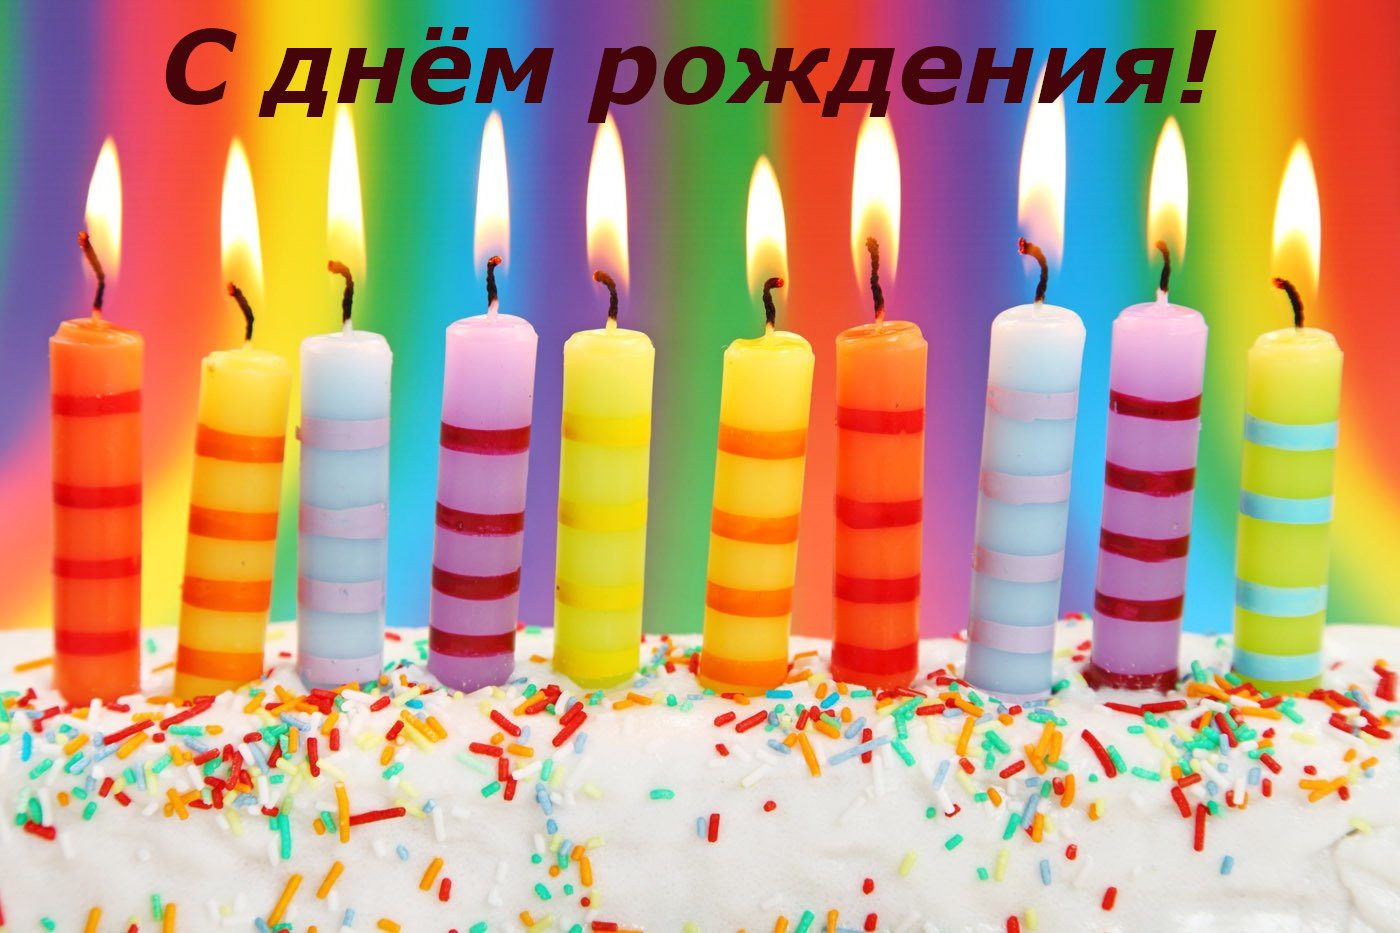 С днём рождения открытки с поздравлениями с днём рождения , торт со свечами С днём рождения , открытки, картинки поздравления в день рождения , красивые с изображением торта со свечами , яркие , торт , свечи с днём рождения , яркость красок.